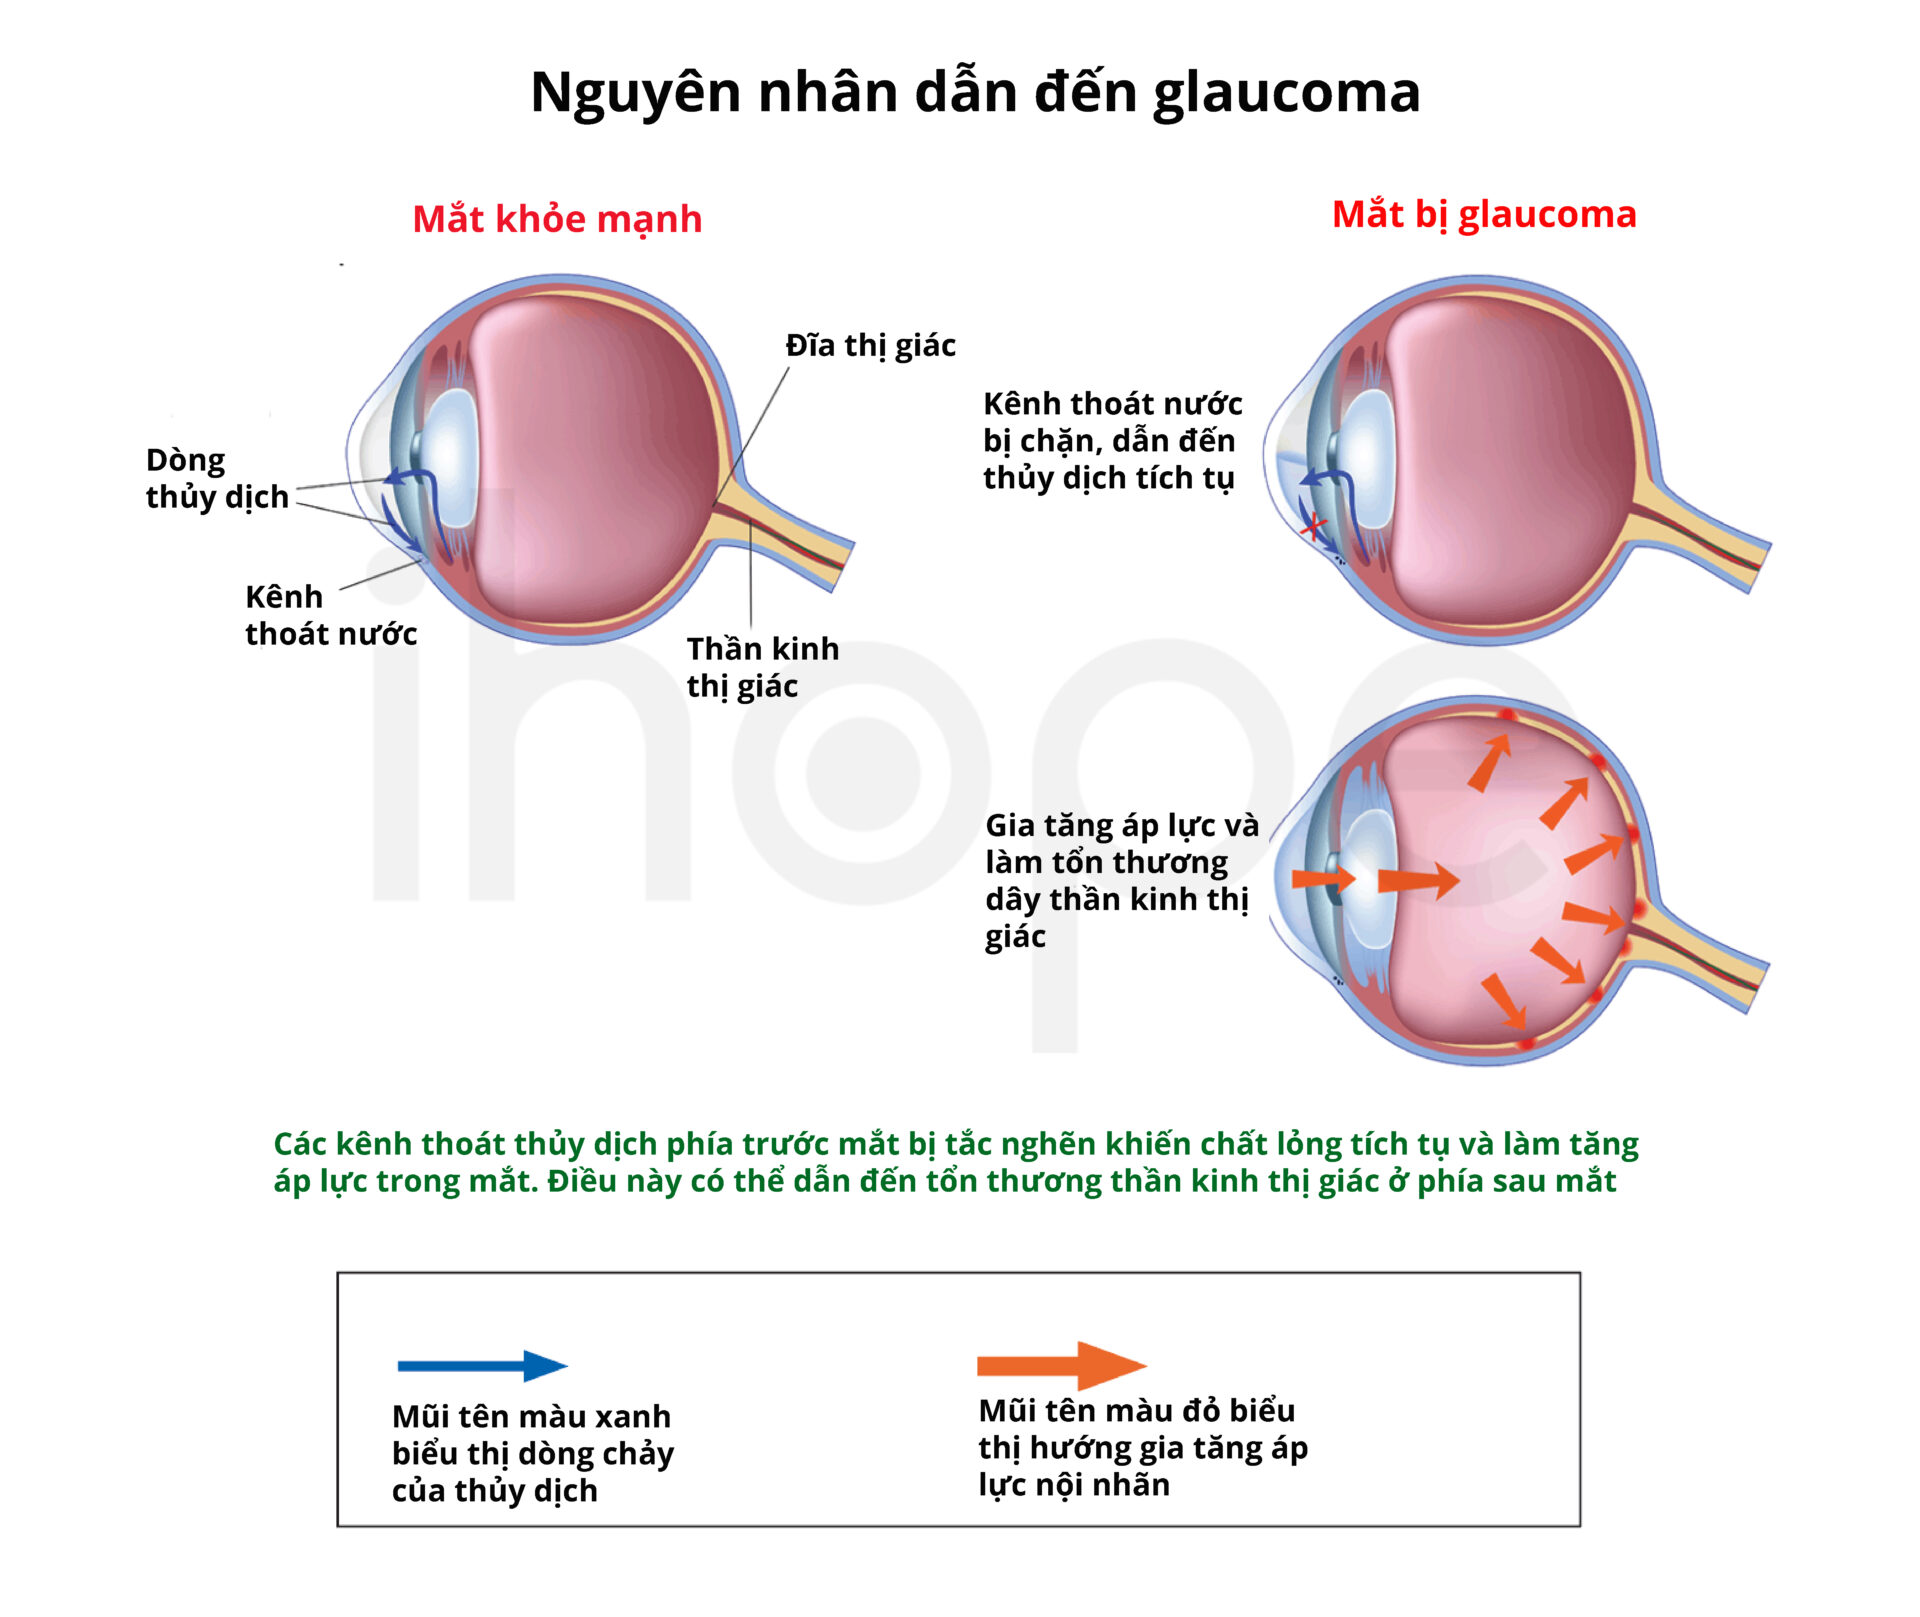 Nguyên Nhân Gây Ra Glaucoma